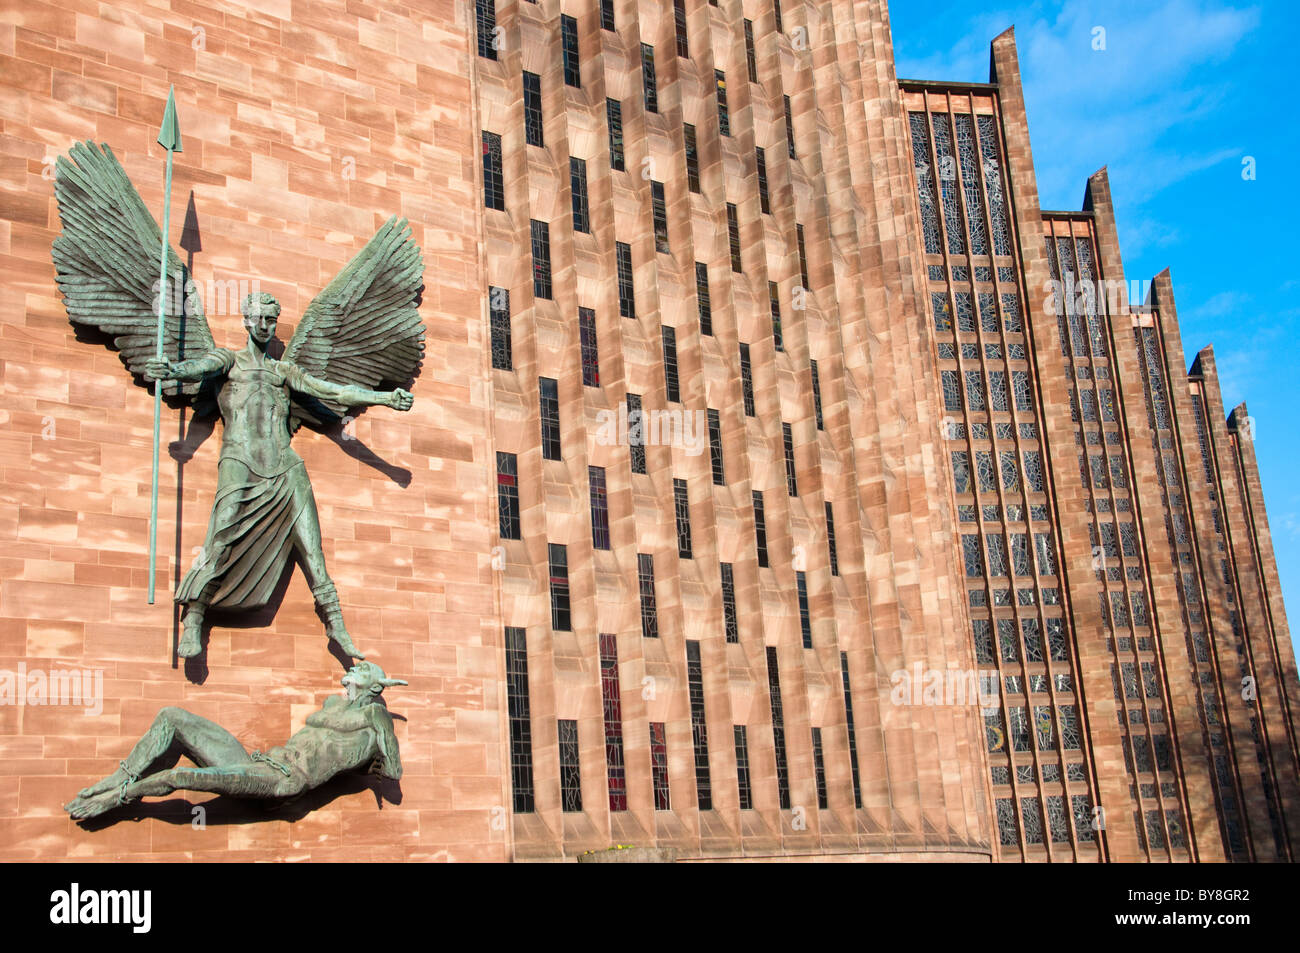 St Michael's victoire sur le Diable, la sculpture par Sir Jacob Epstein au St Michael's ou la cathédrale de Coventry, en Angleterre. Banque D'Images